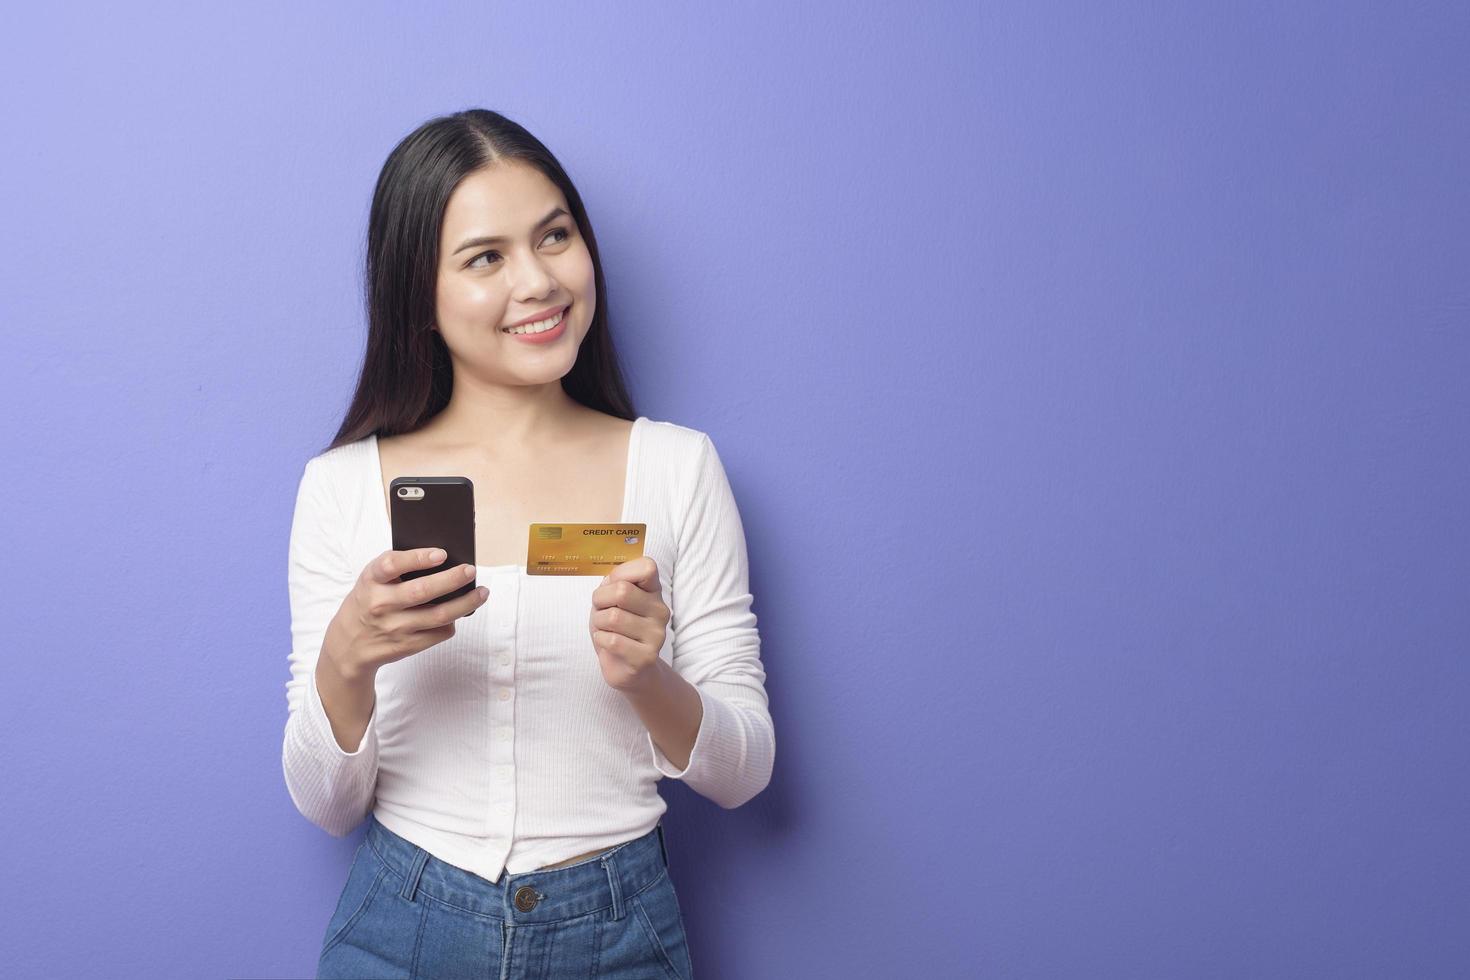 porträtt av ung asiatisk kvinna använder mobiltelefon med kreditkort på lila bakgrund foto